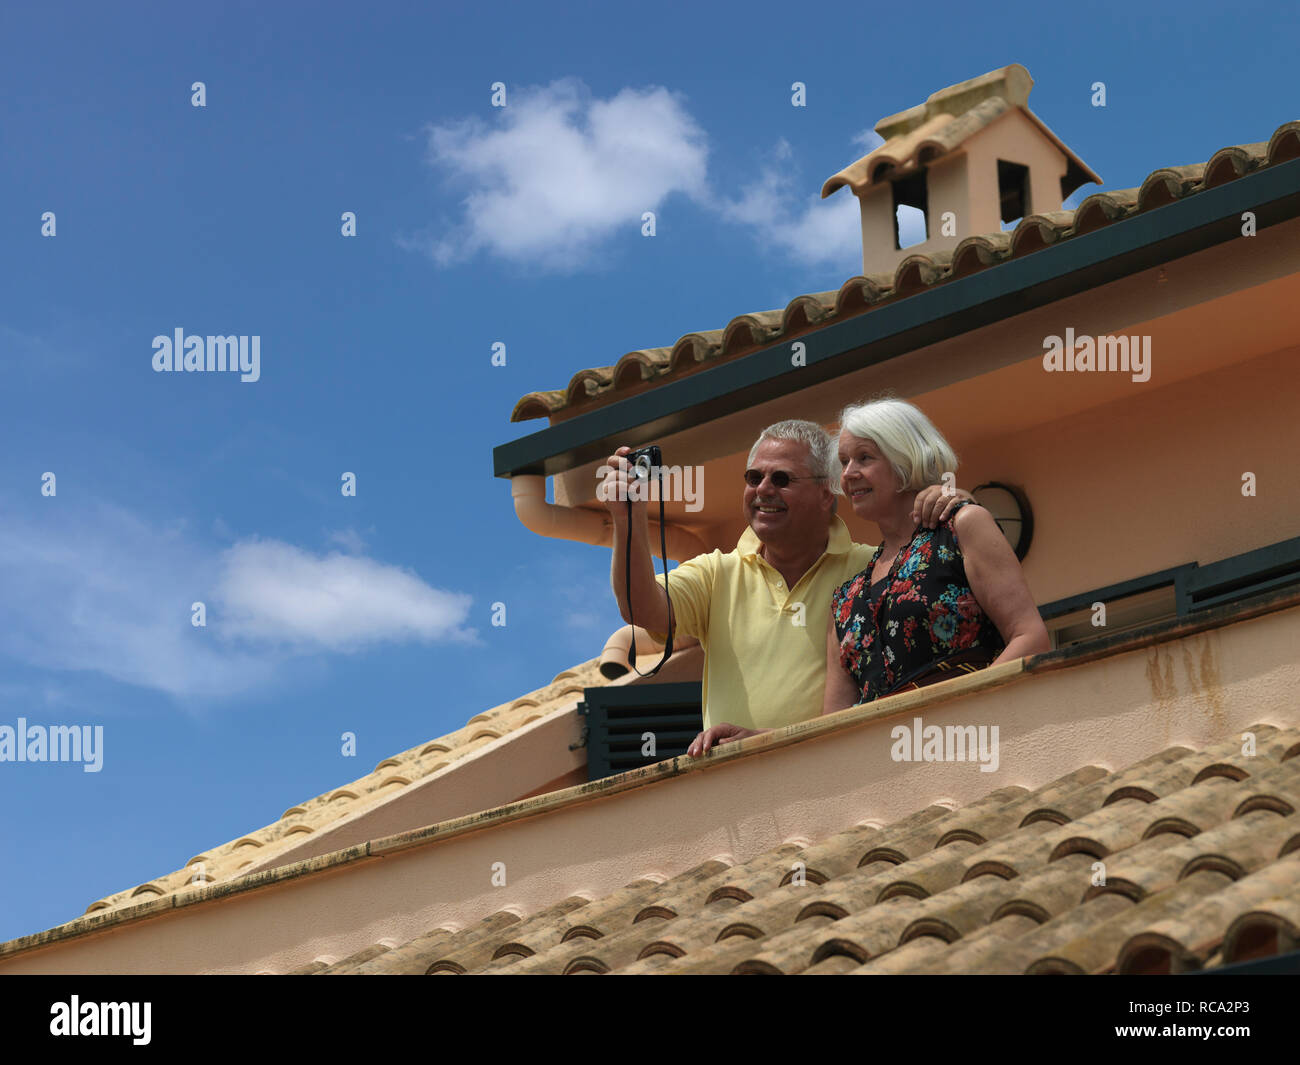 Älteres Ehepaar auf dem Balkon votre Ferienhauses | vieux couple sur le balcon de leur appartement de vacances Banque D'Images